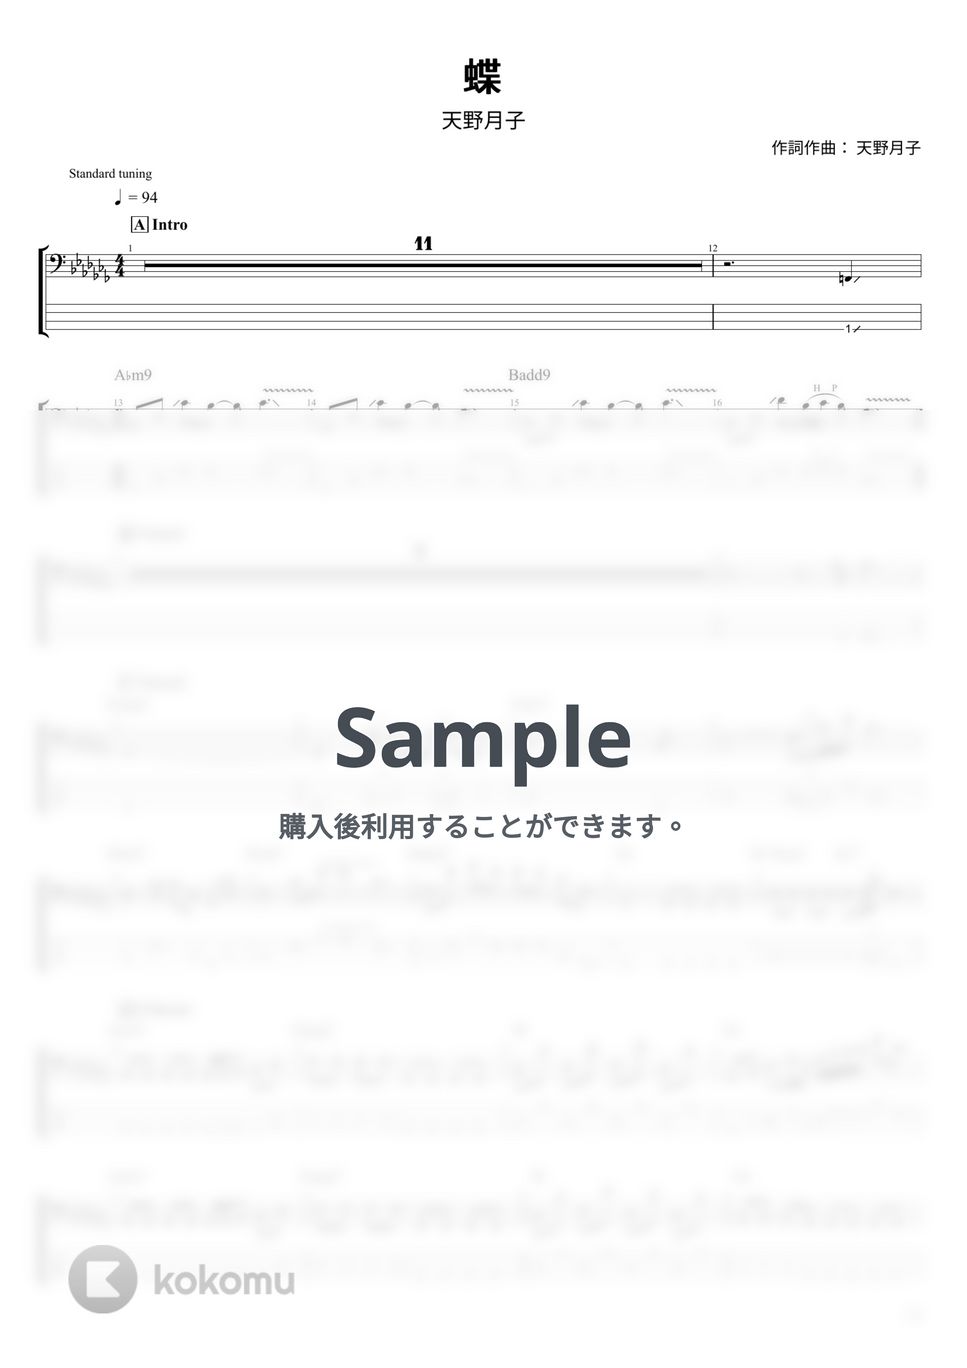 天野月子 - 蝶 (ベース Tab譜 4弦) by T's bass score